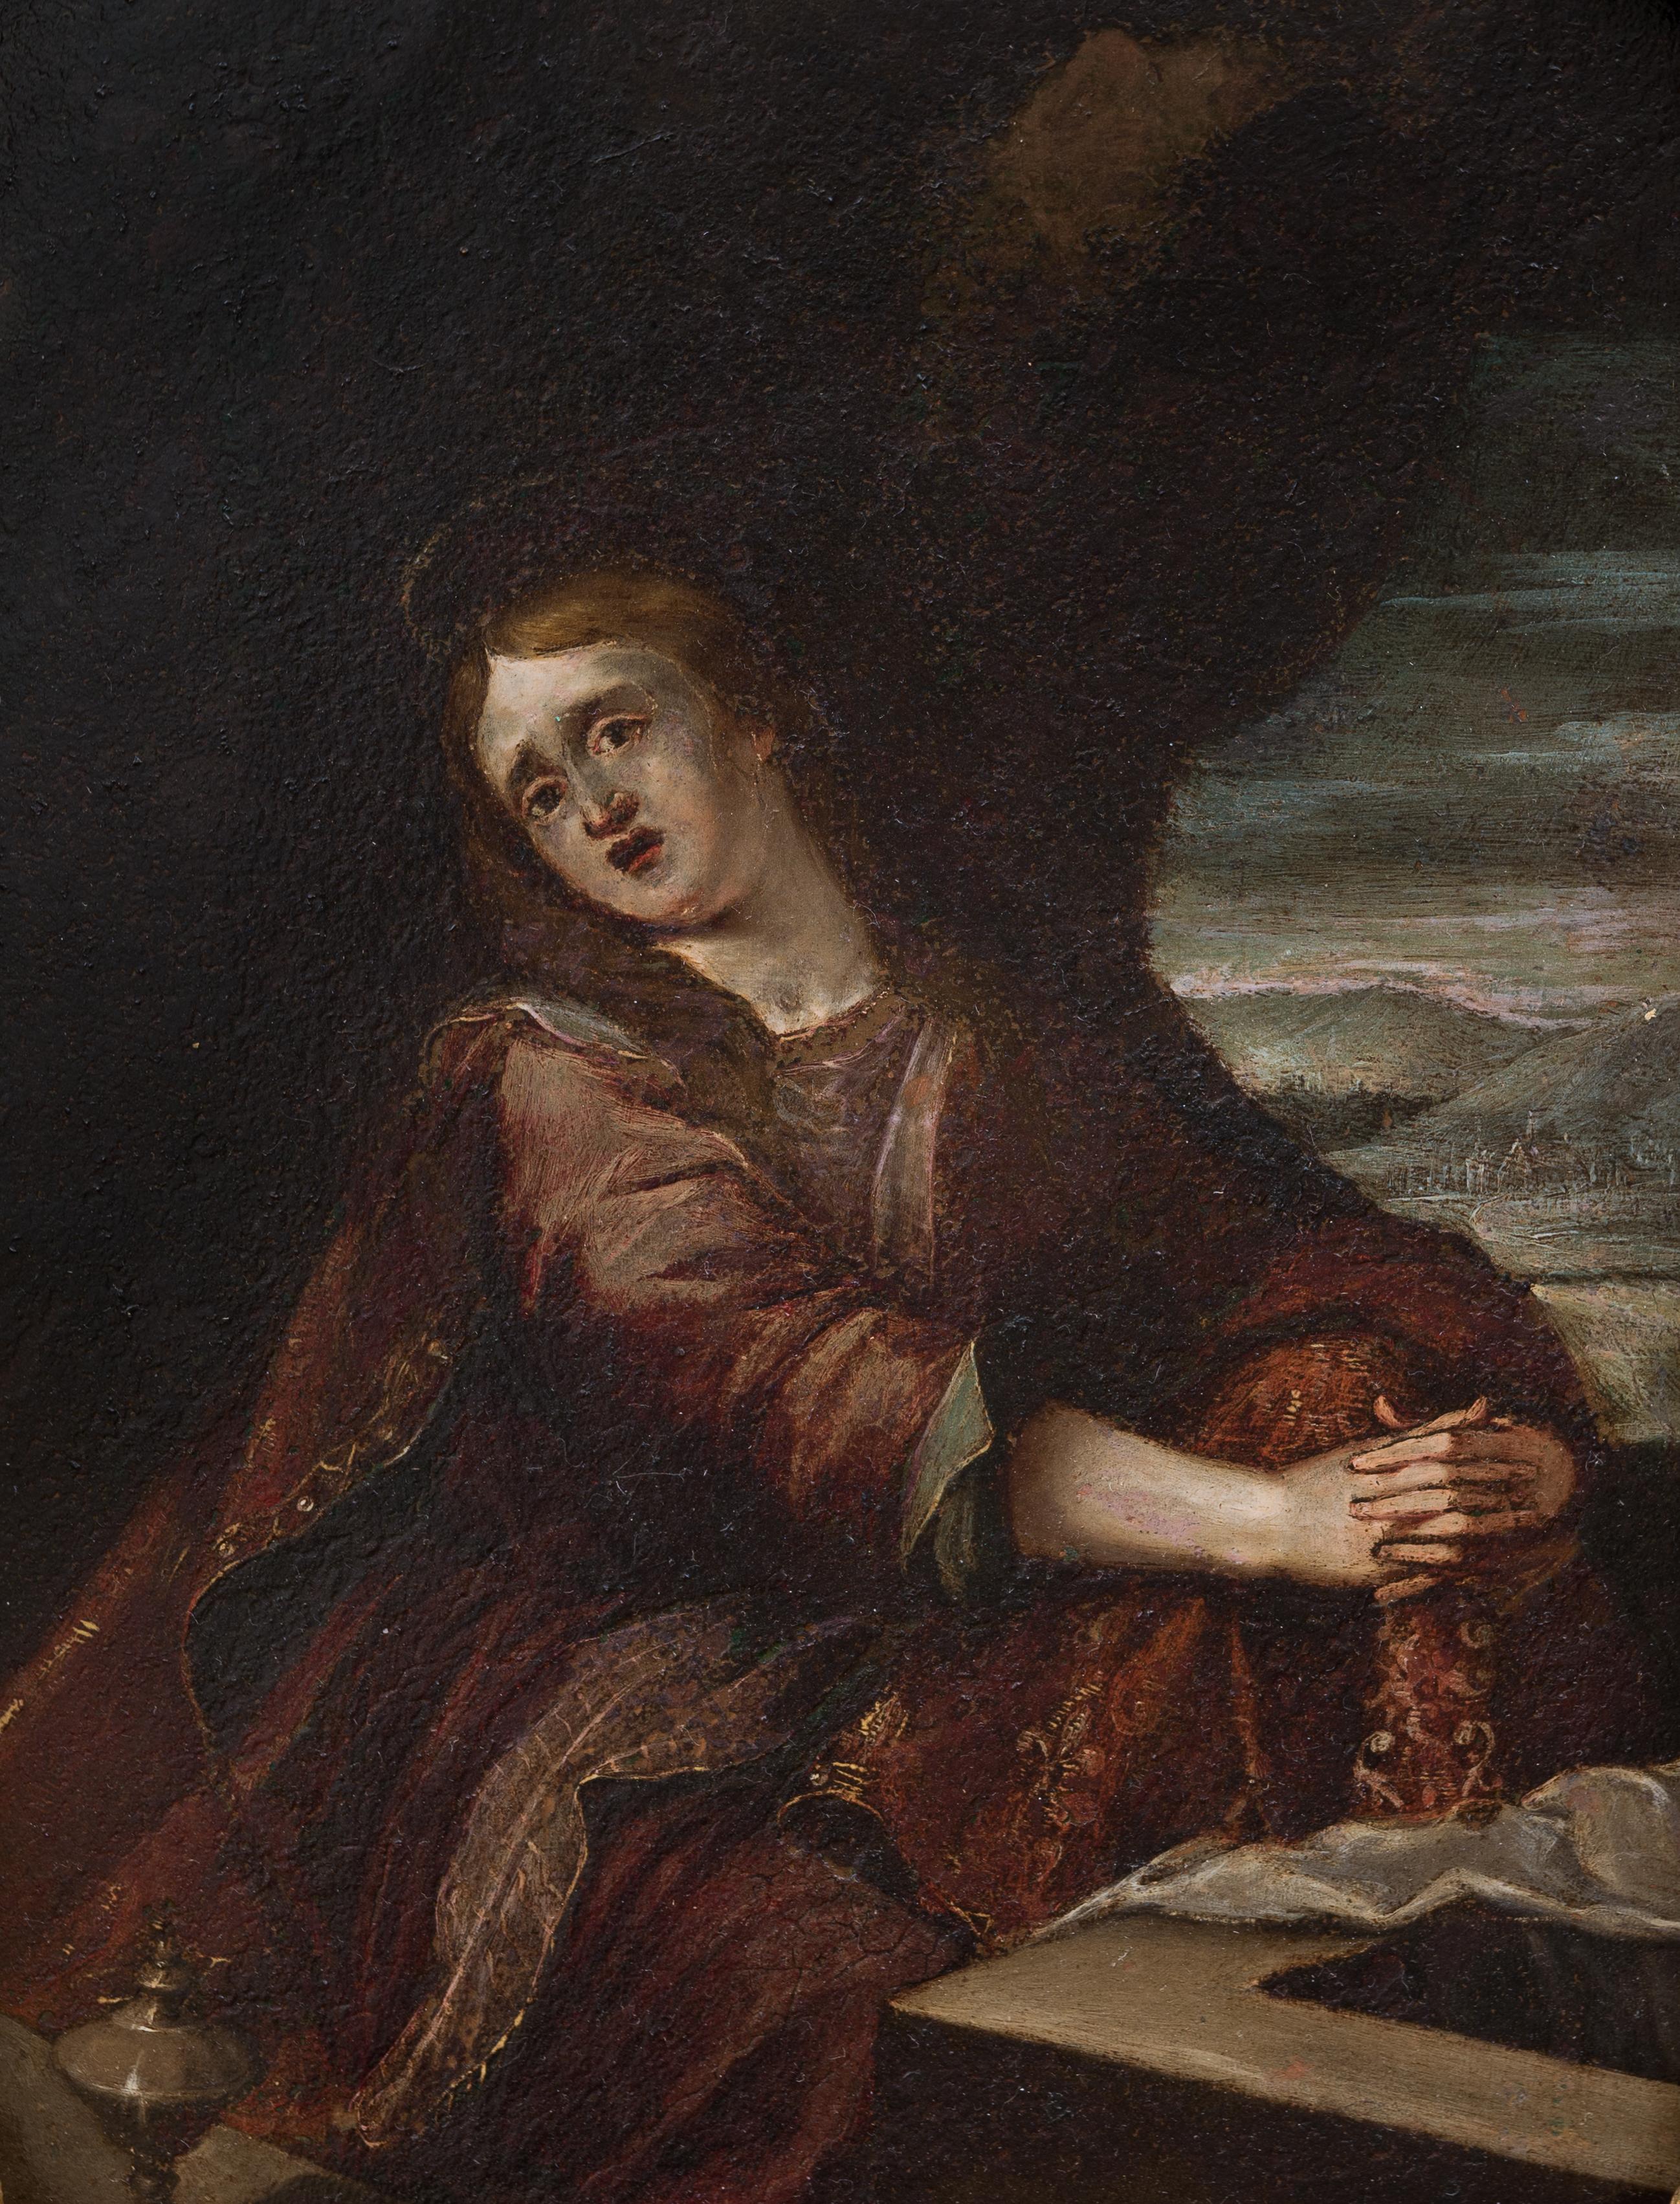 Flämische Schule, 17. Jahrhundert, Mary Magdalene  – Painting von Unknown